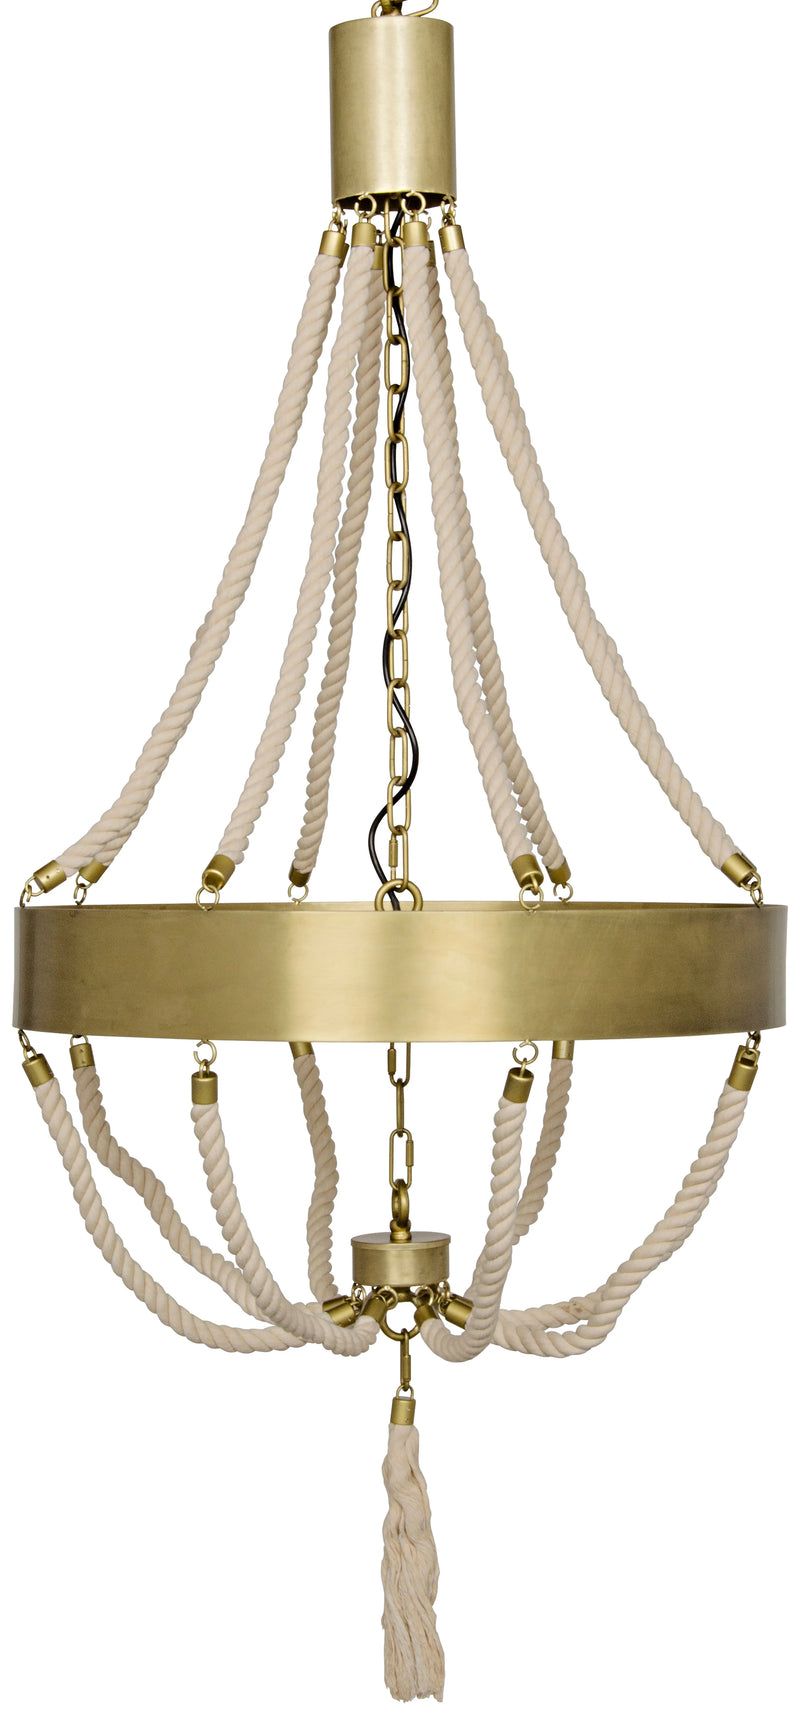 media image for alec chandelier design by noir 1 278